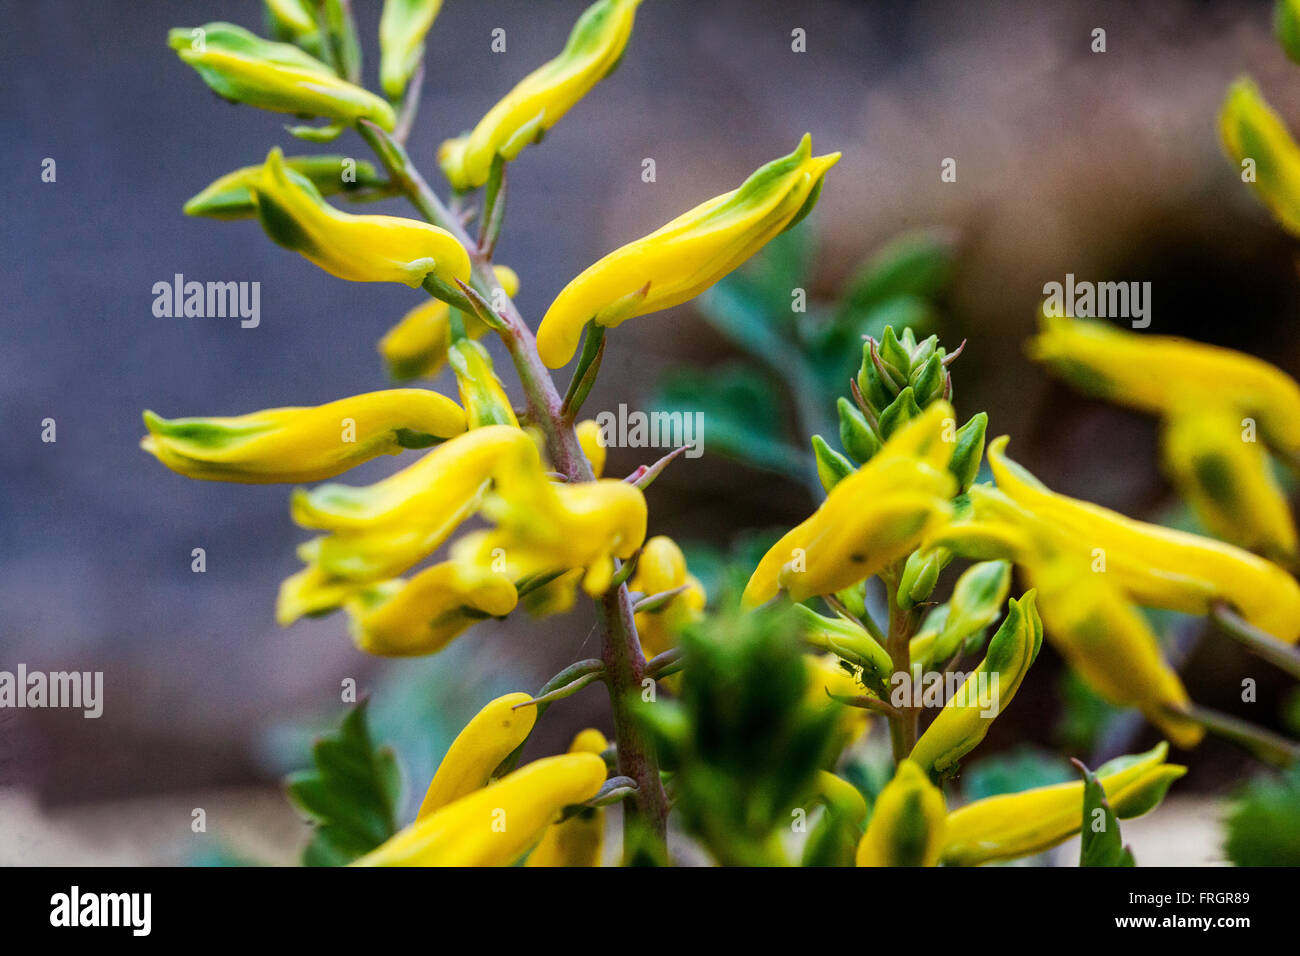 Corydalis wilsonii, yellow flowering Stock Photo